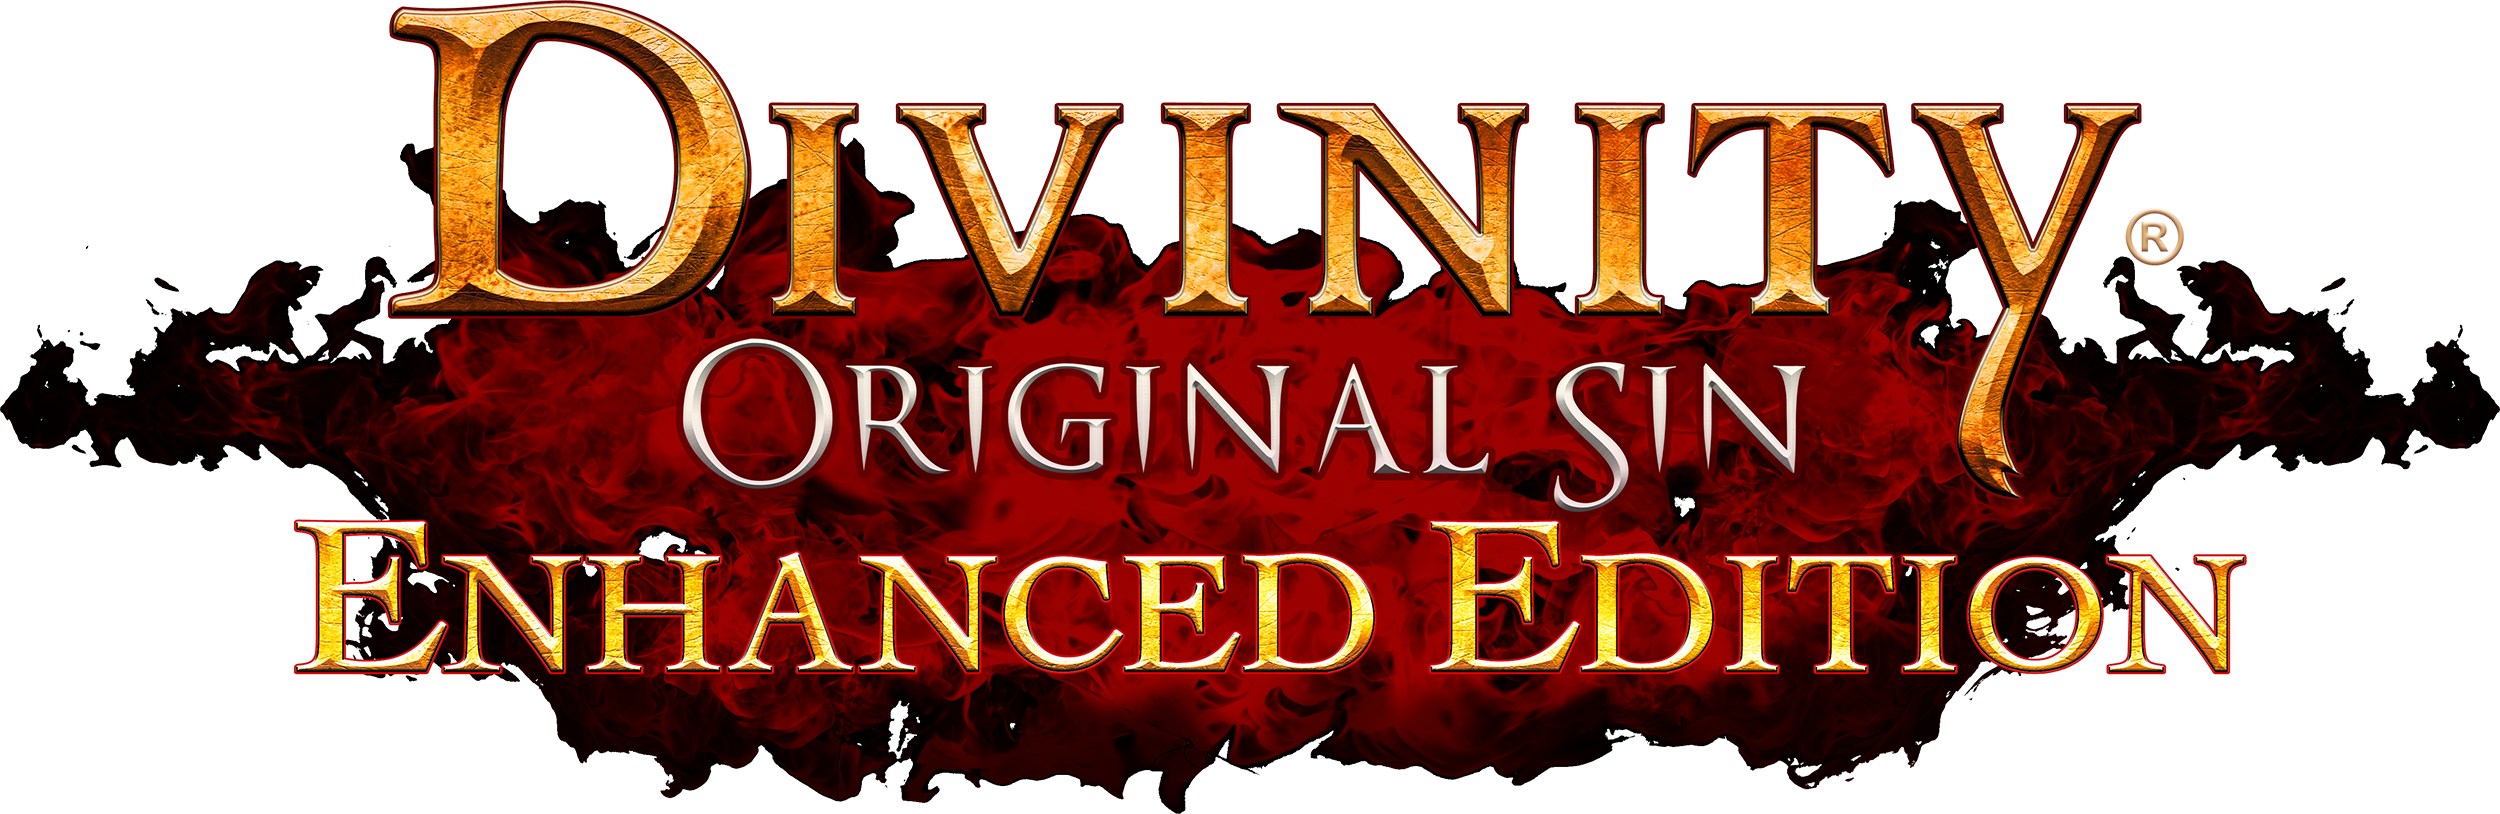 divinity original sin enhanced recipes